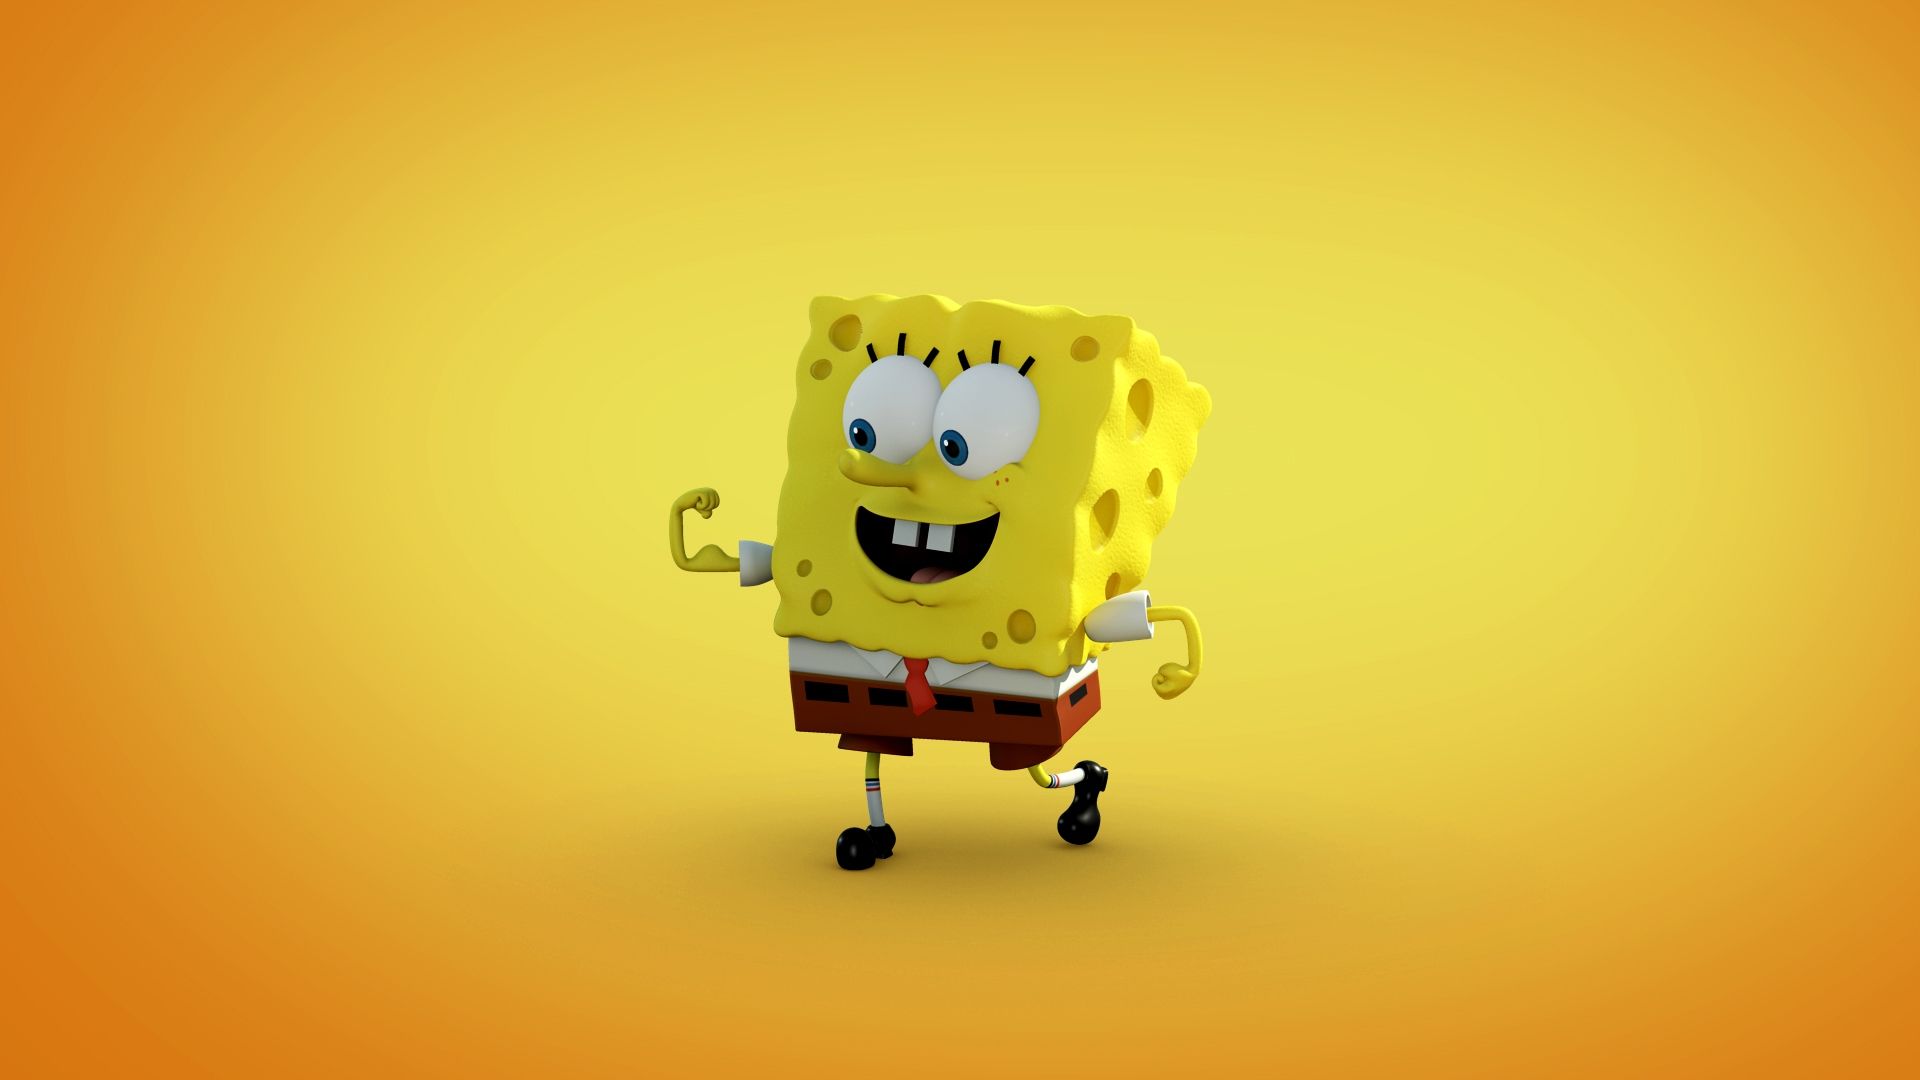 3D SpongeBob SquarePants Wallpaper Wallpaper 1080p. Spongebob iphone wallpaper, Spongebob, Spongebob wallpaper